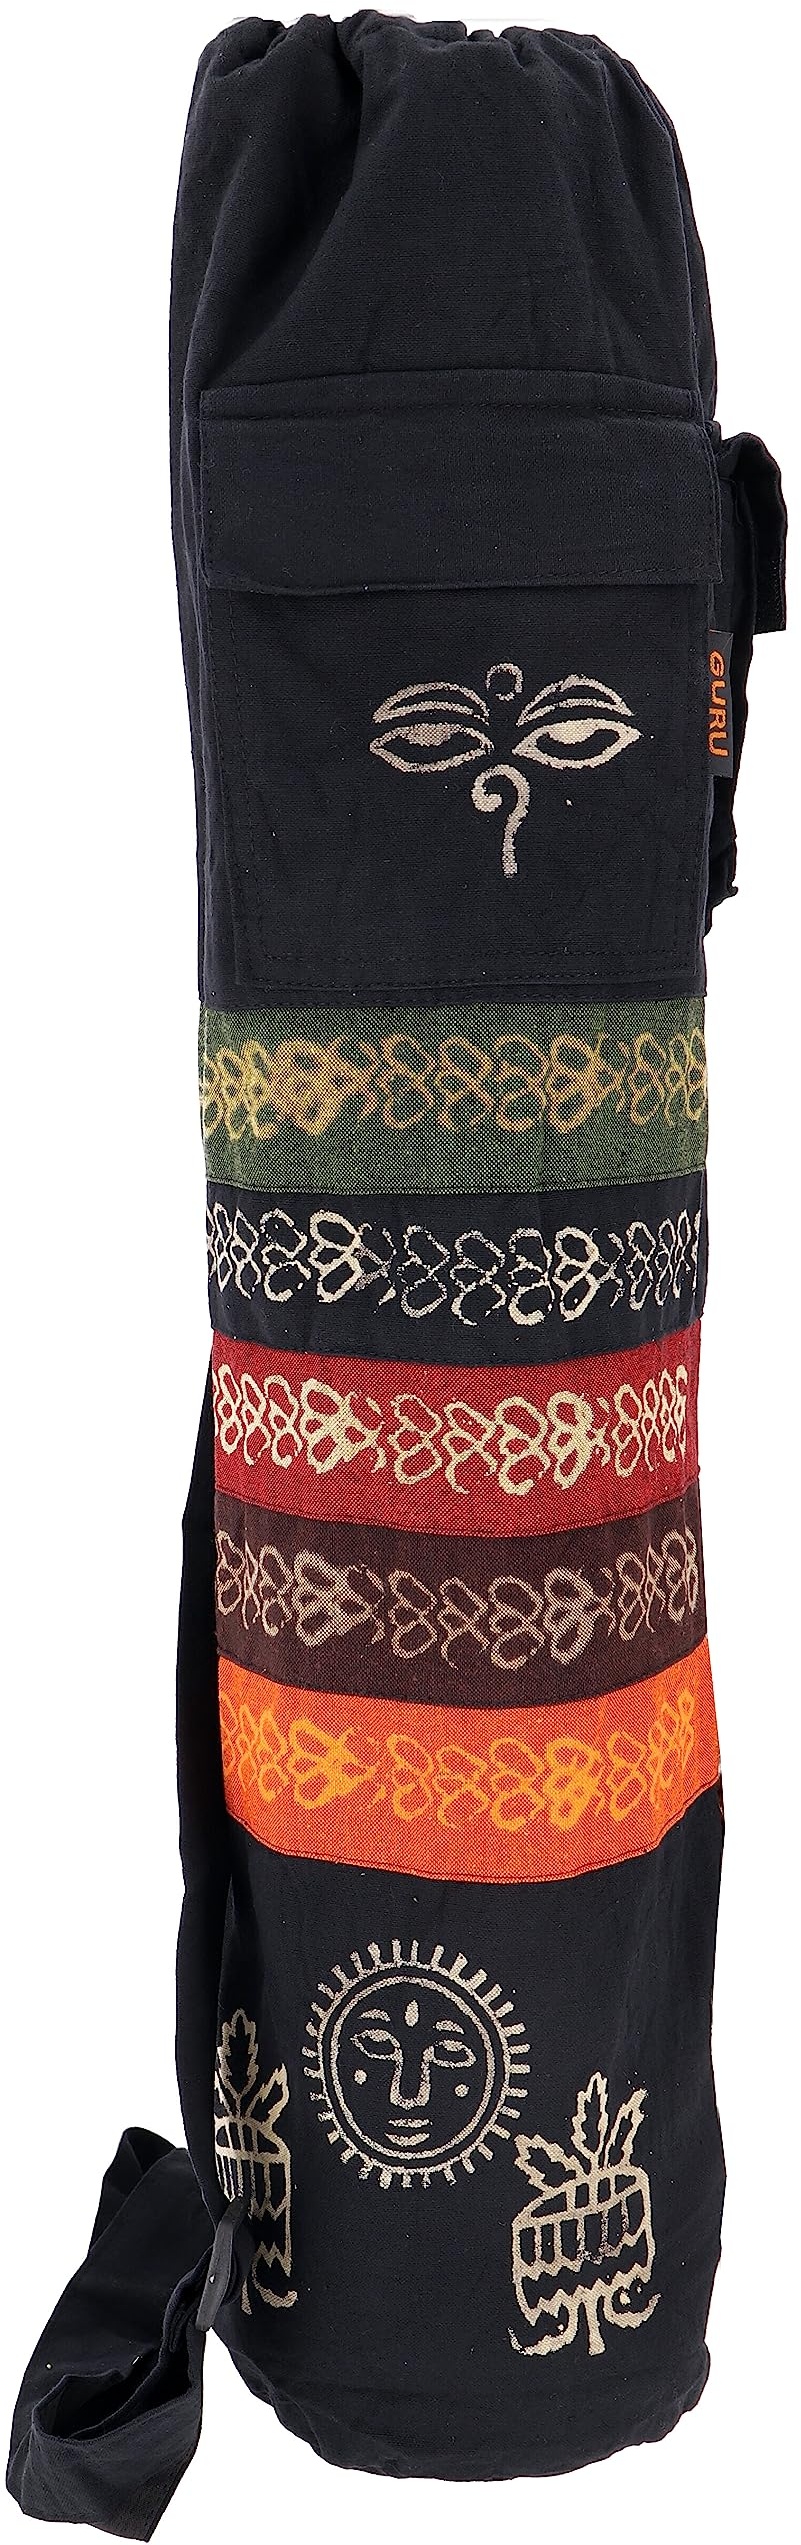 GURU SHOP Boho Yogamatten-Tasche, Batik Yogatasche aus Nepal - Schwarz, Herren/Damen, Baumwolle, Size:One Size, 70x23x13 cm, Taschen für Yogamatten - Einheitsgröße